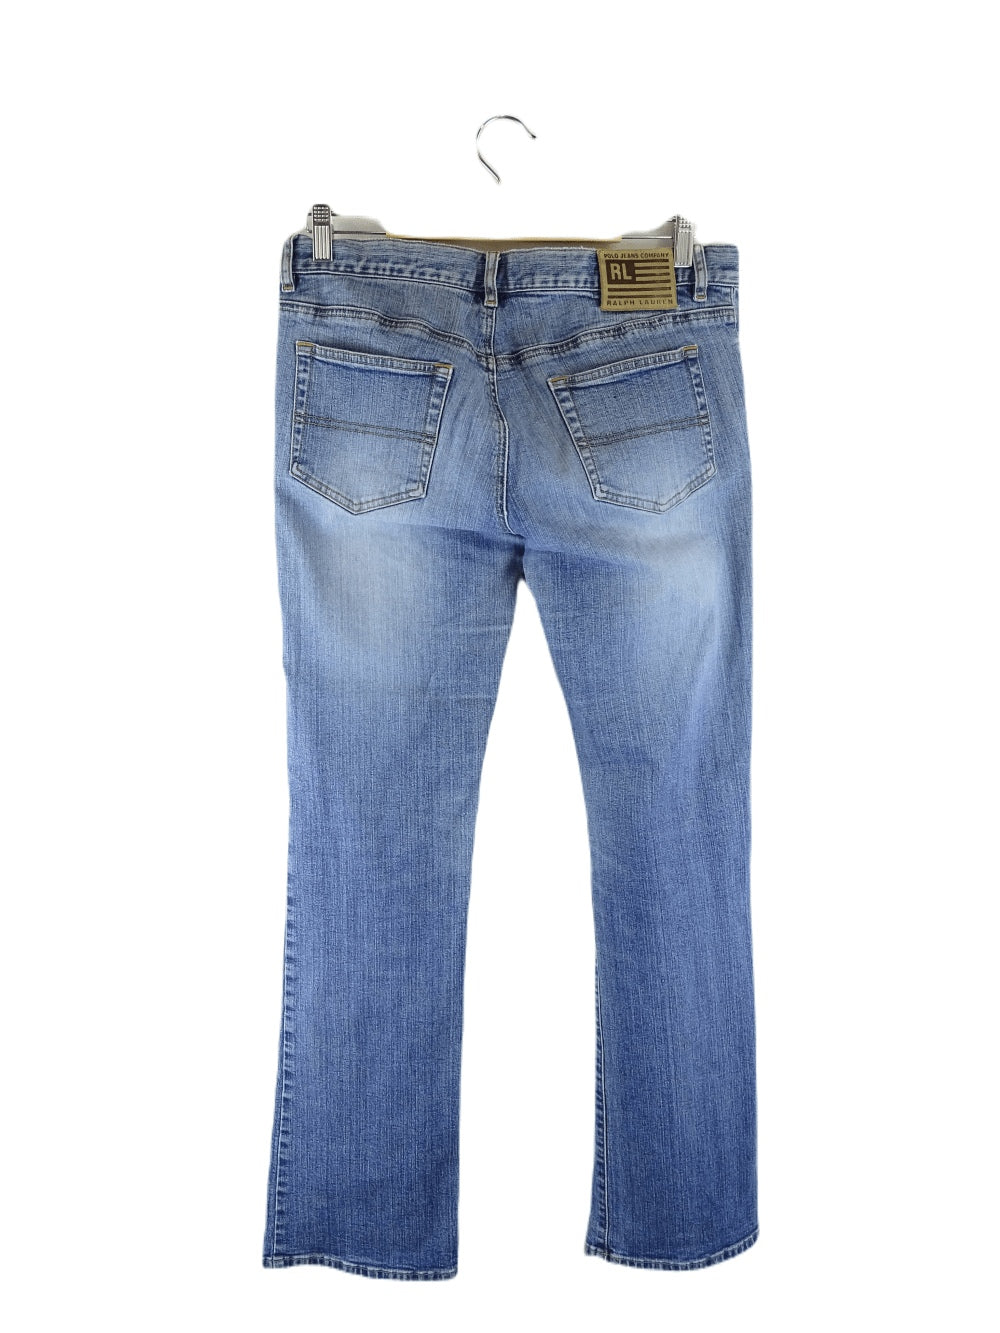 Polo Ralph Lauren Jeans Blue 10